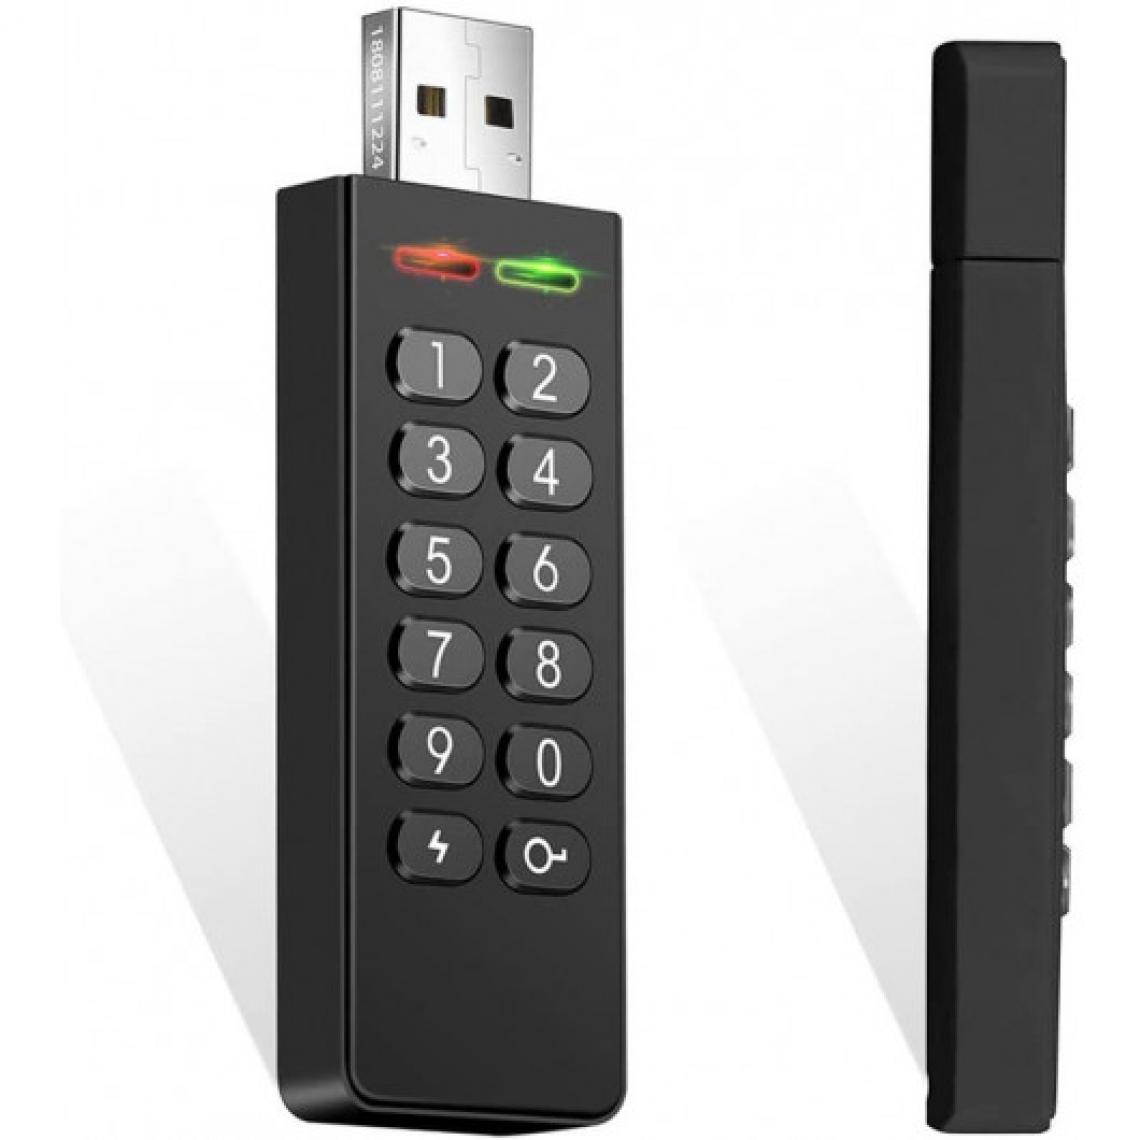 Ofs Selection - INNÔPLUS Secure Flash Drive, une clé USB sécurisée - Box domotique et passerelle